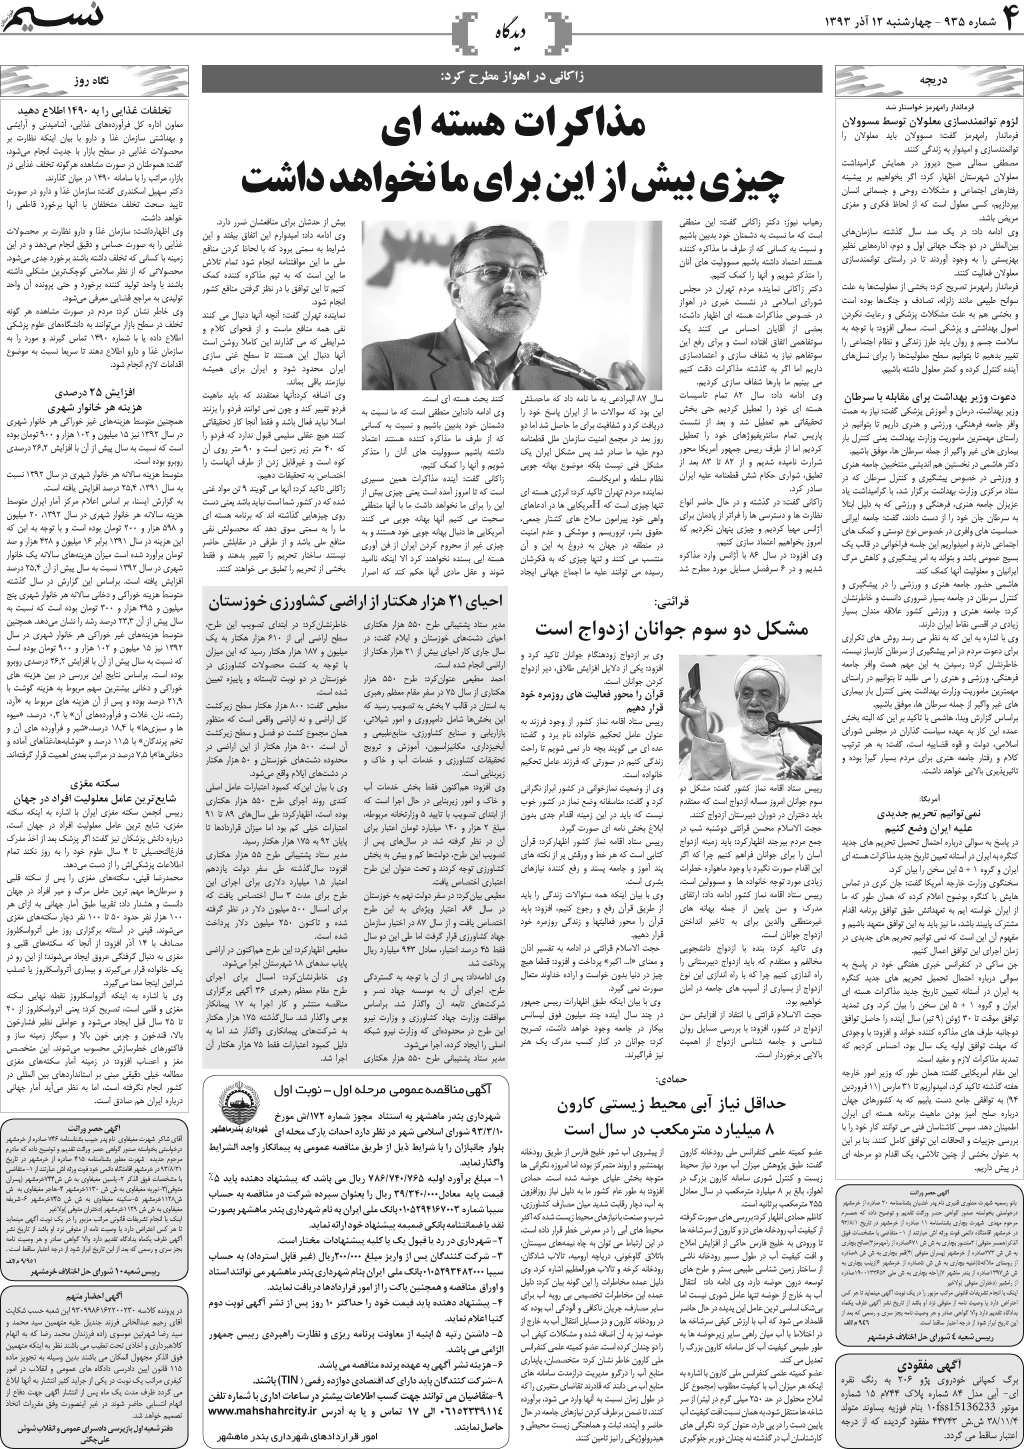 صفحه دیدگاه روزنامه نسیم شماره 935